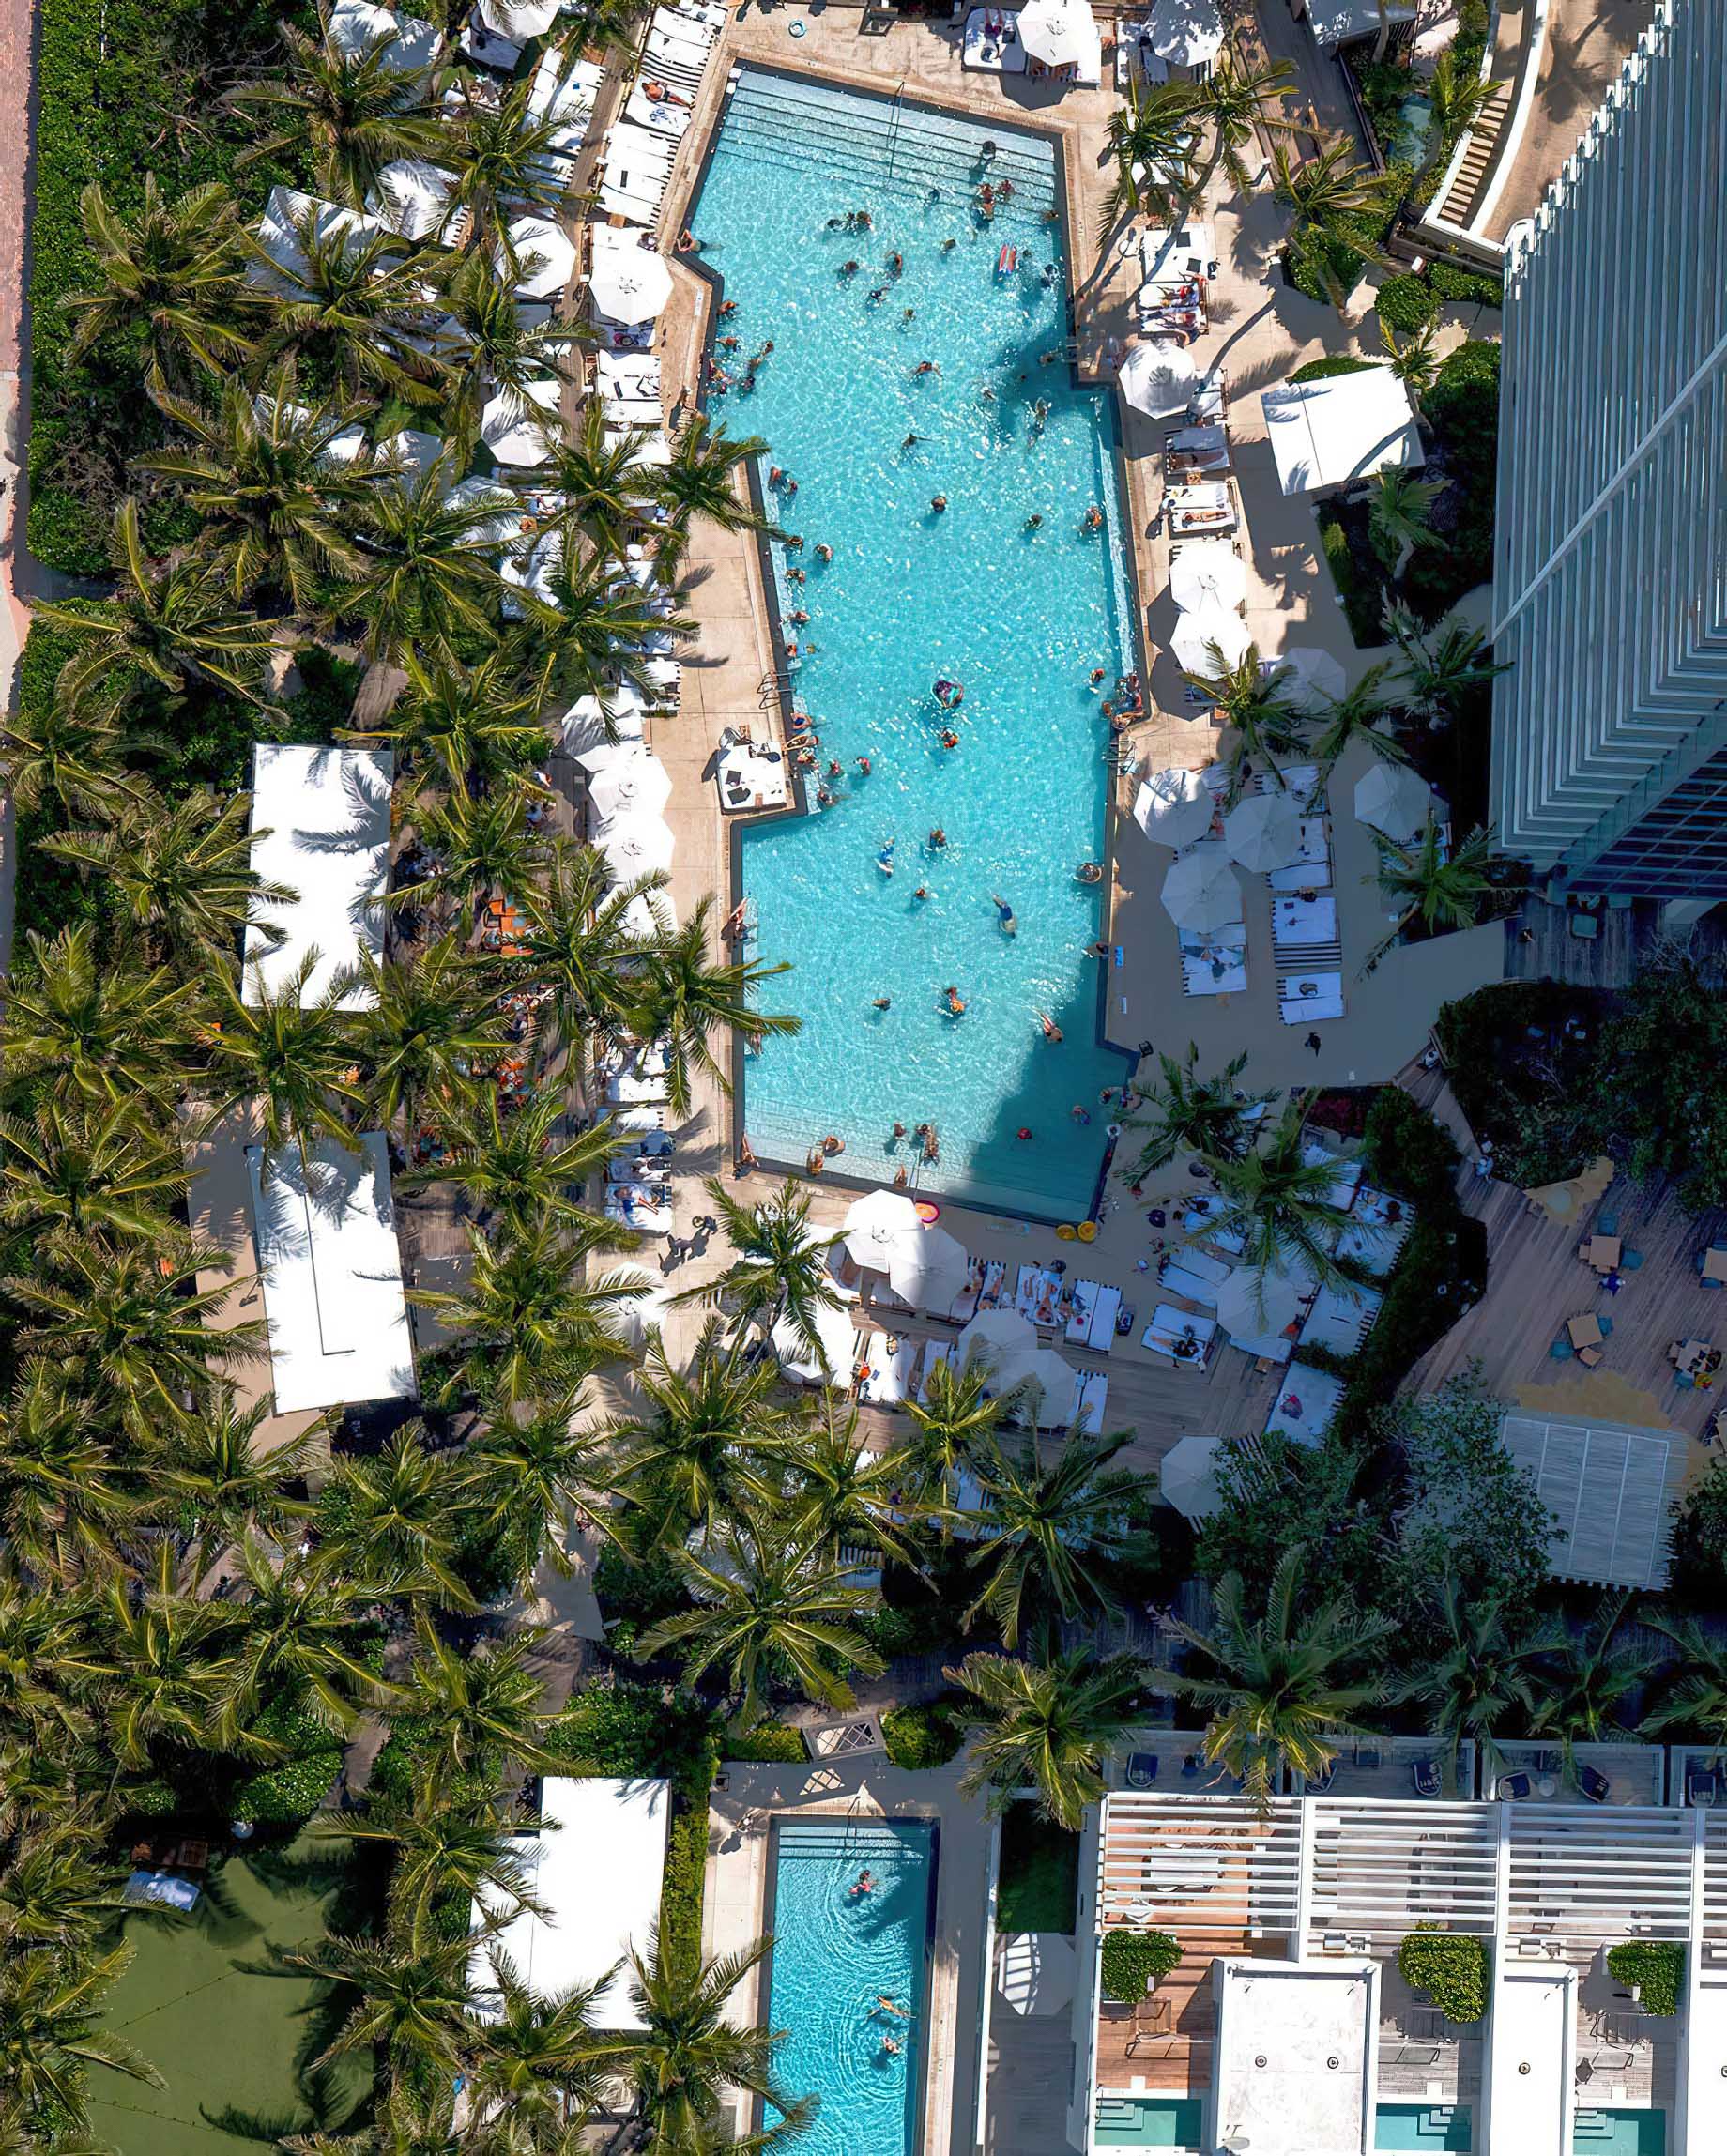 W South Beach Hotel – Miami Beach, FL, USA – Overhead Pool View